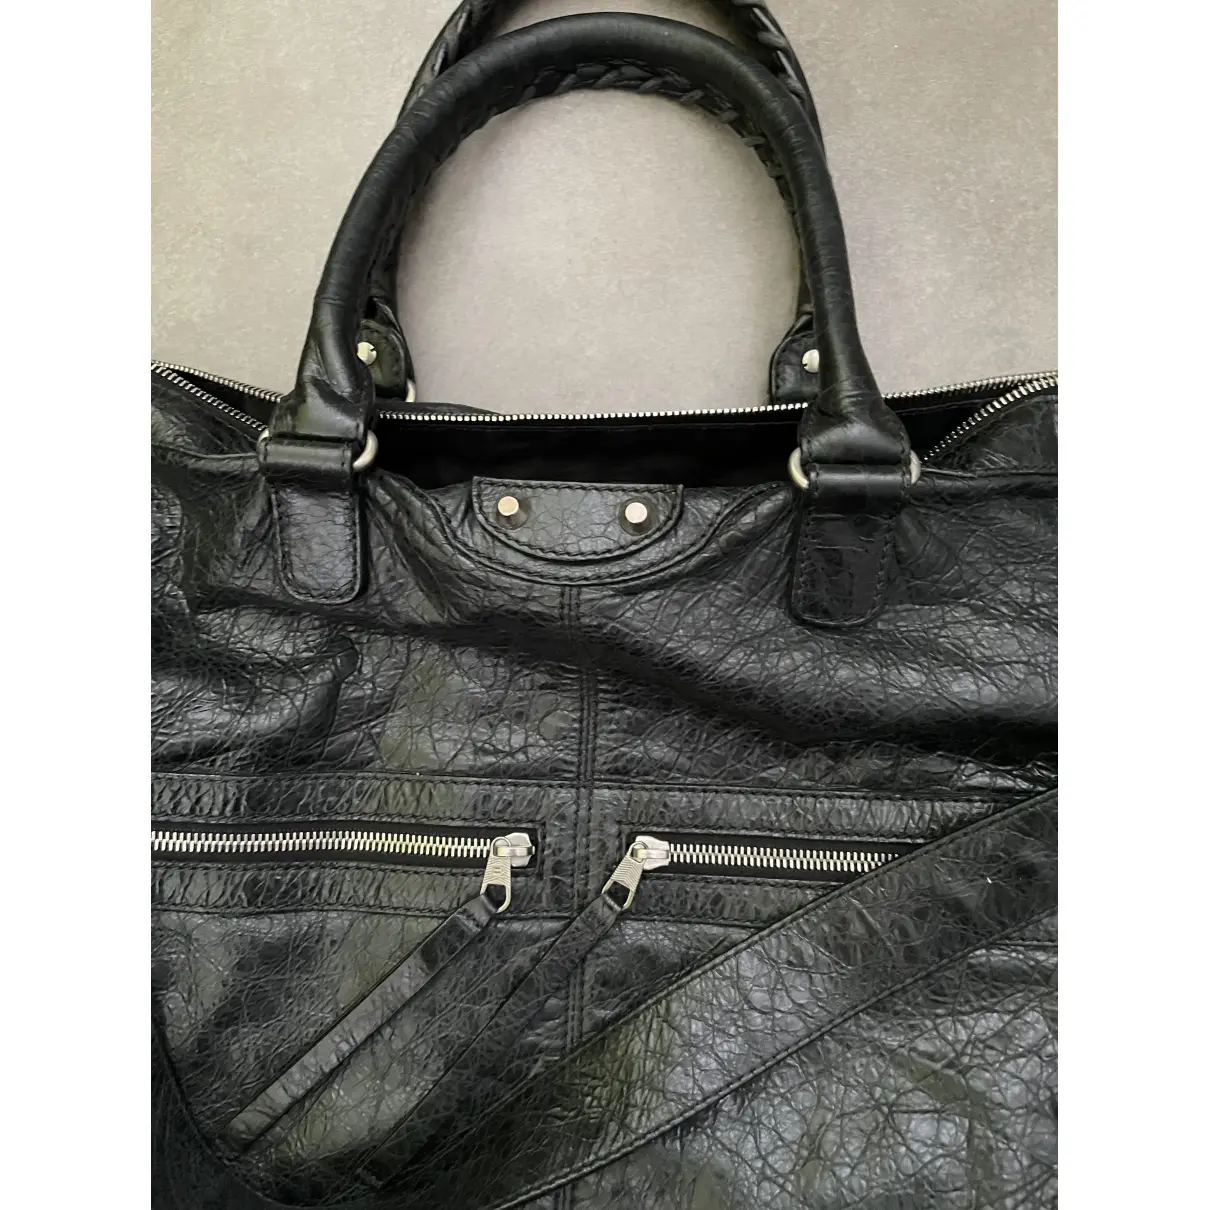 Neo Classic leather bag Balenciaga